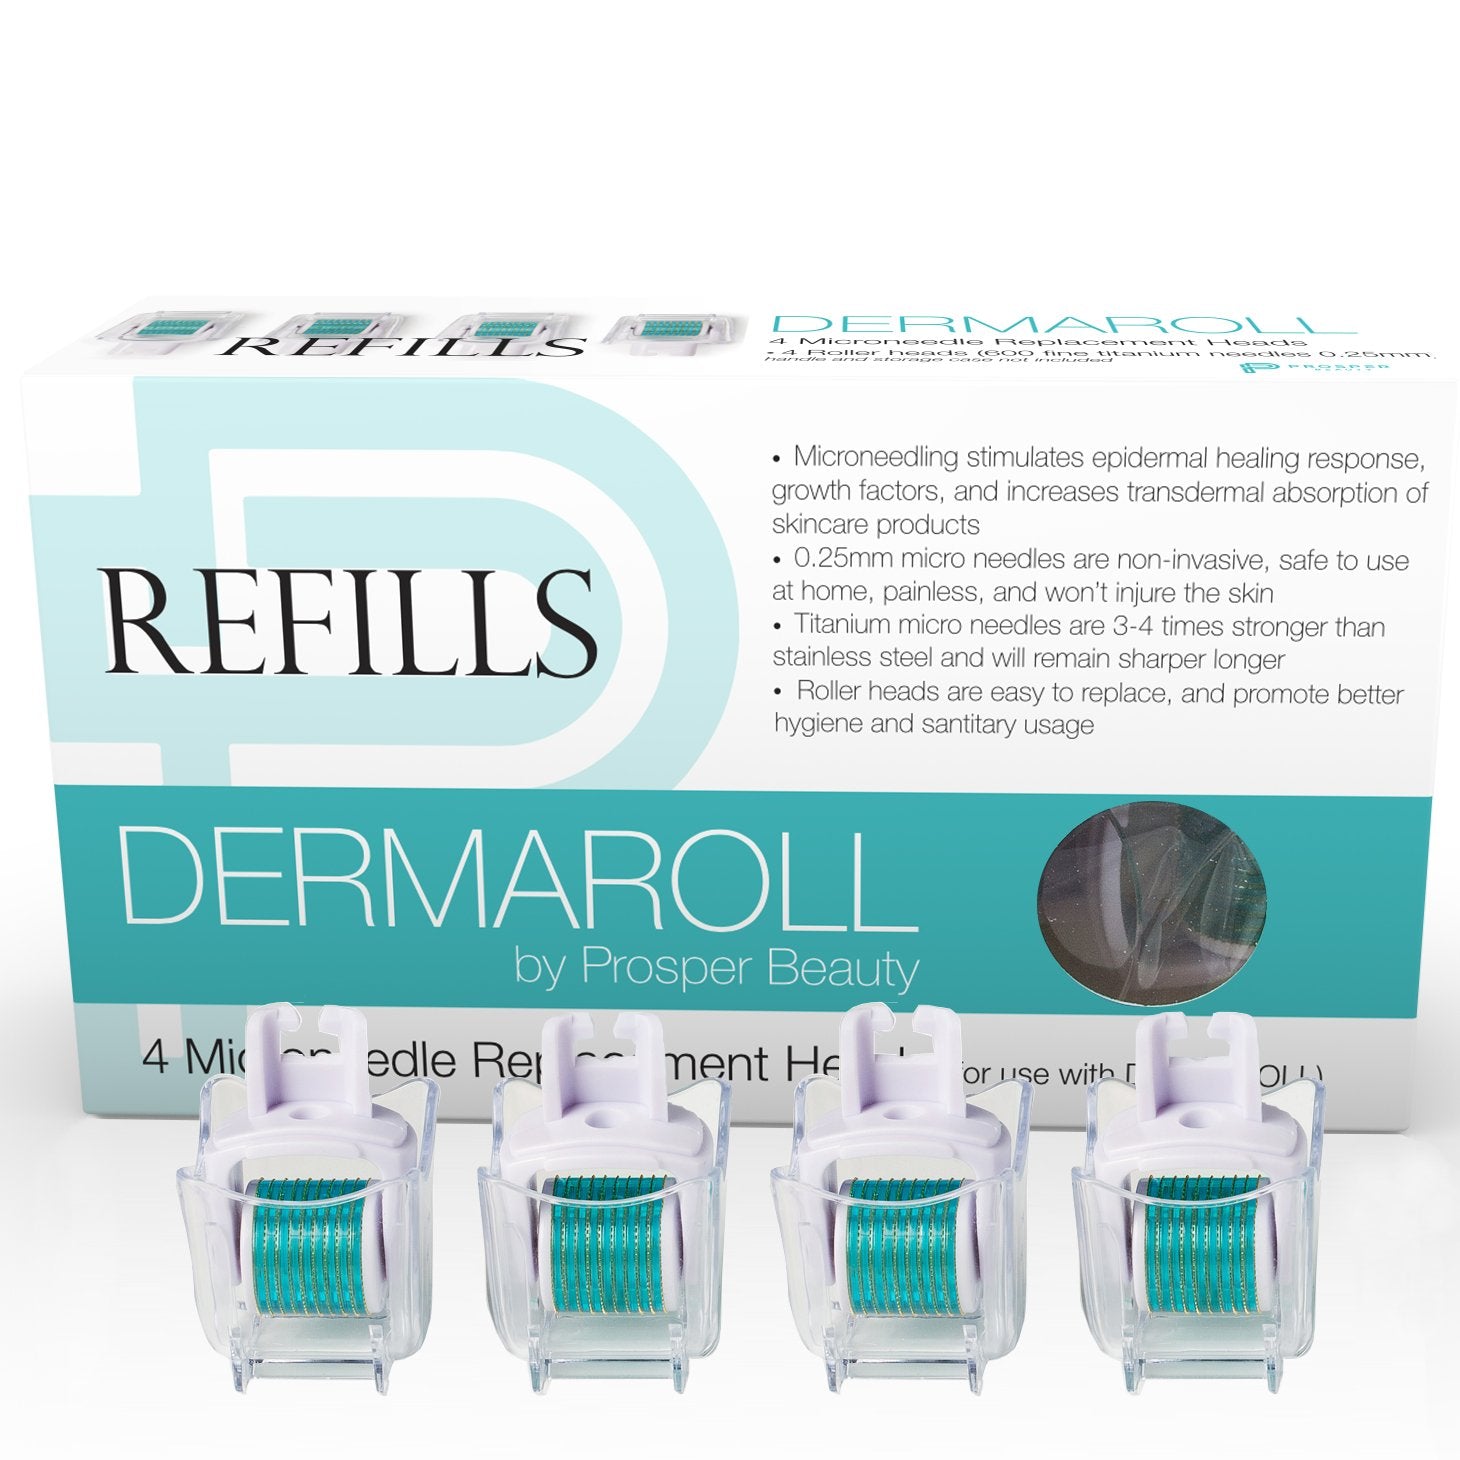 DERMAROLL REFILLS 0.25mm by Prosper Beauty (4 Roller Heads 0.25mm - NO HANDLE, ROLLER HEADS ONLY)